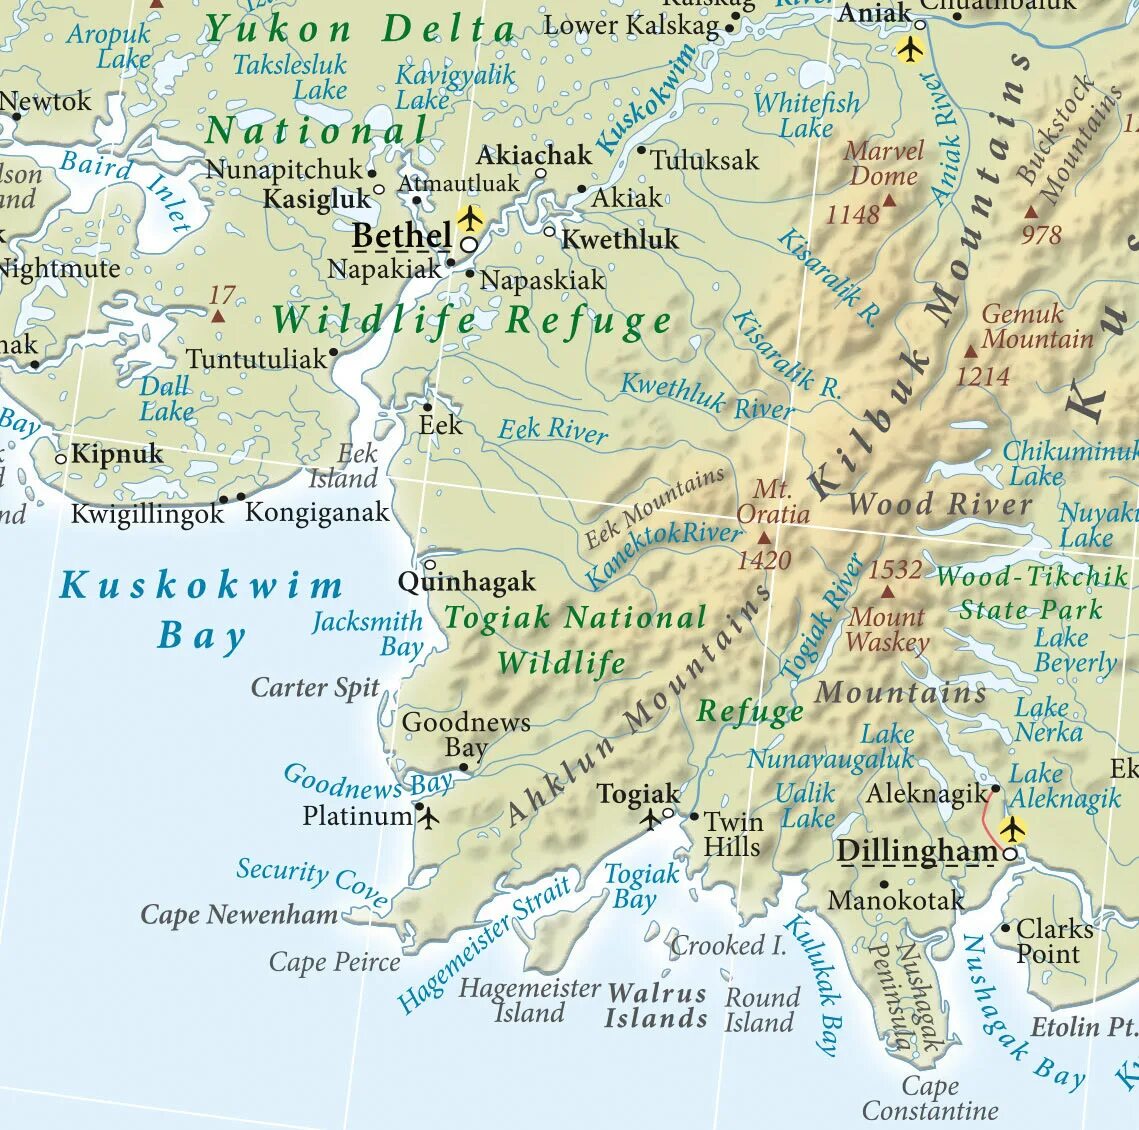 Аляска штат США на карте. Где находится полуостров Аляска на карте Северной Америки. Расположение полуострова Аляска на карте. Границы штата Аляска на карте. Северная америка полуостров аляска